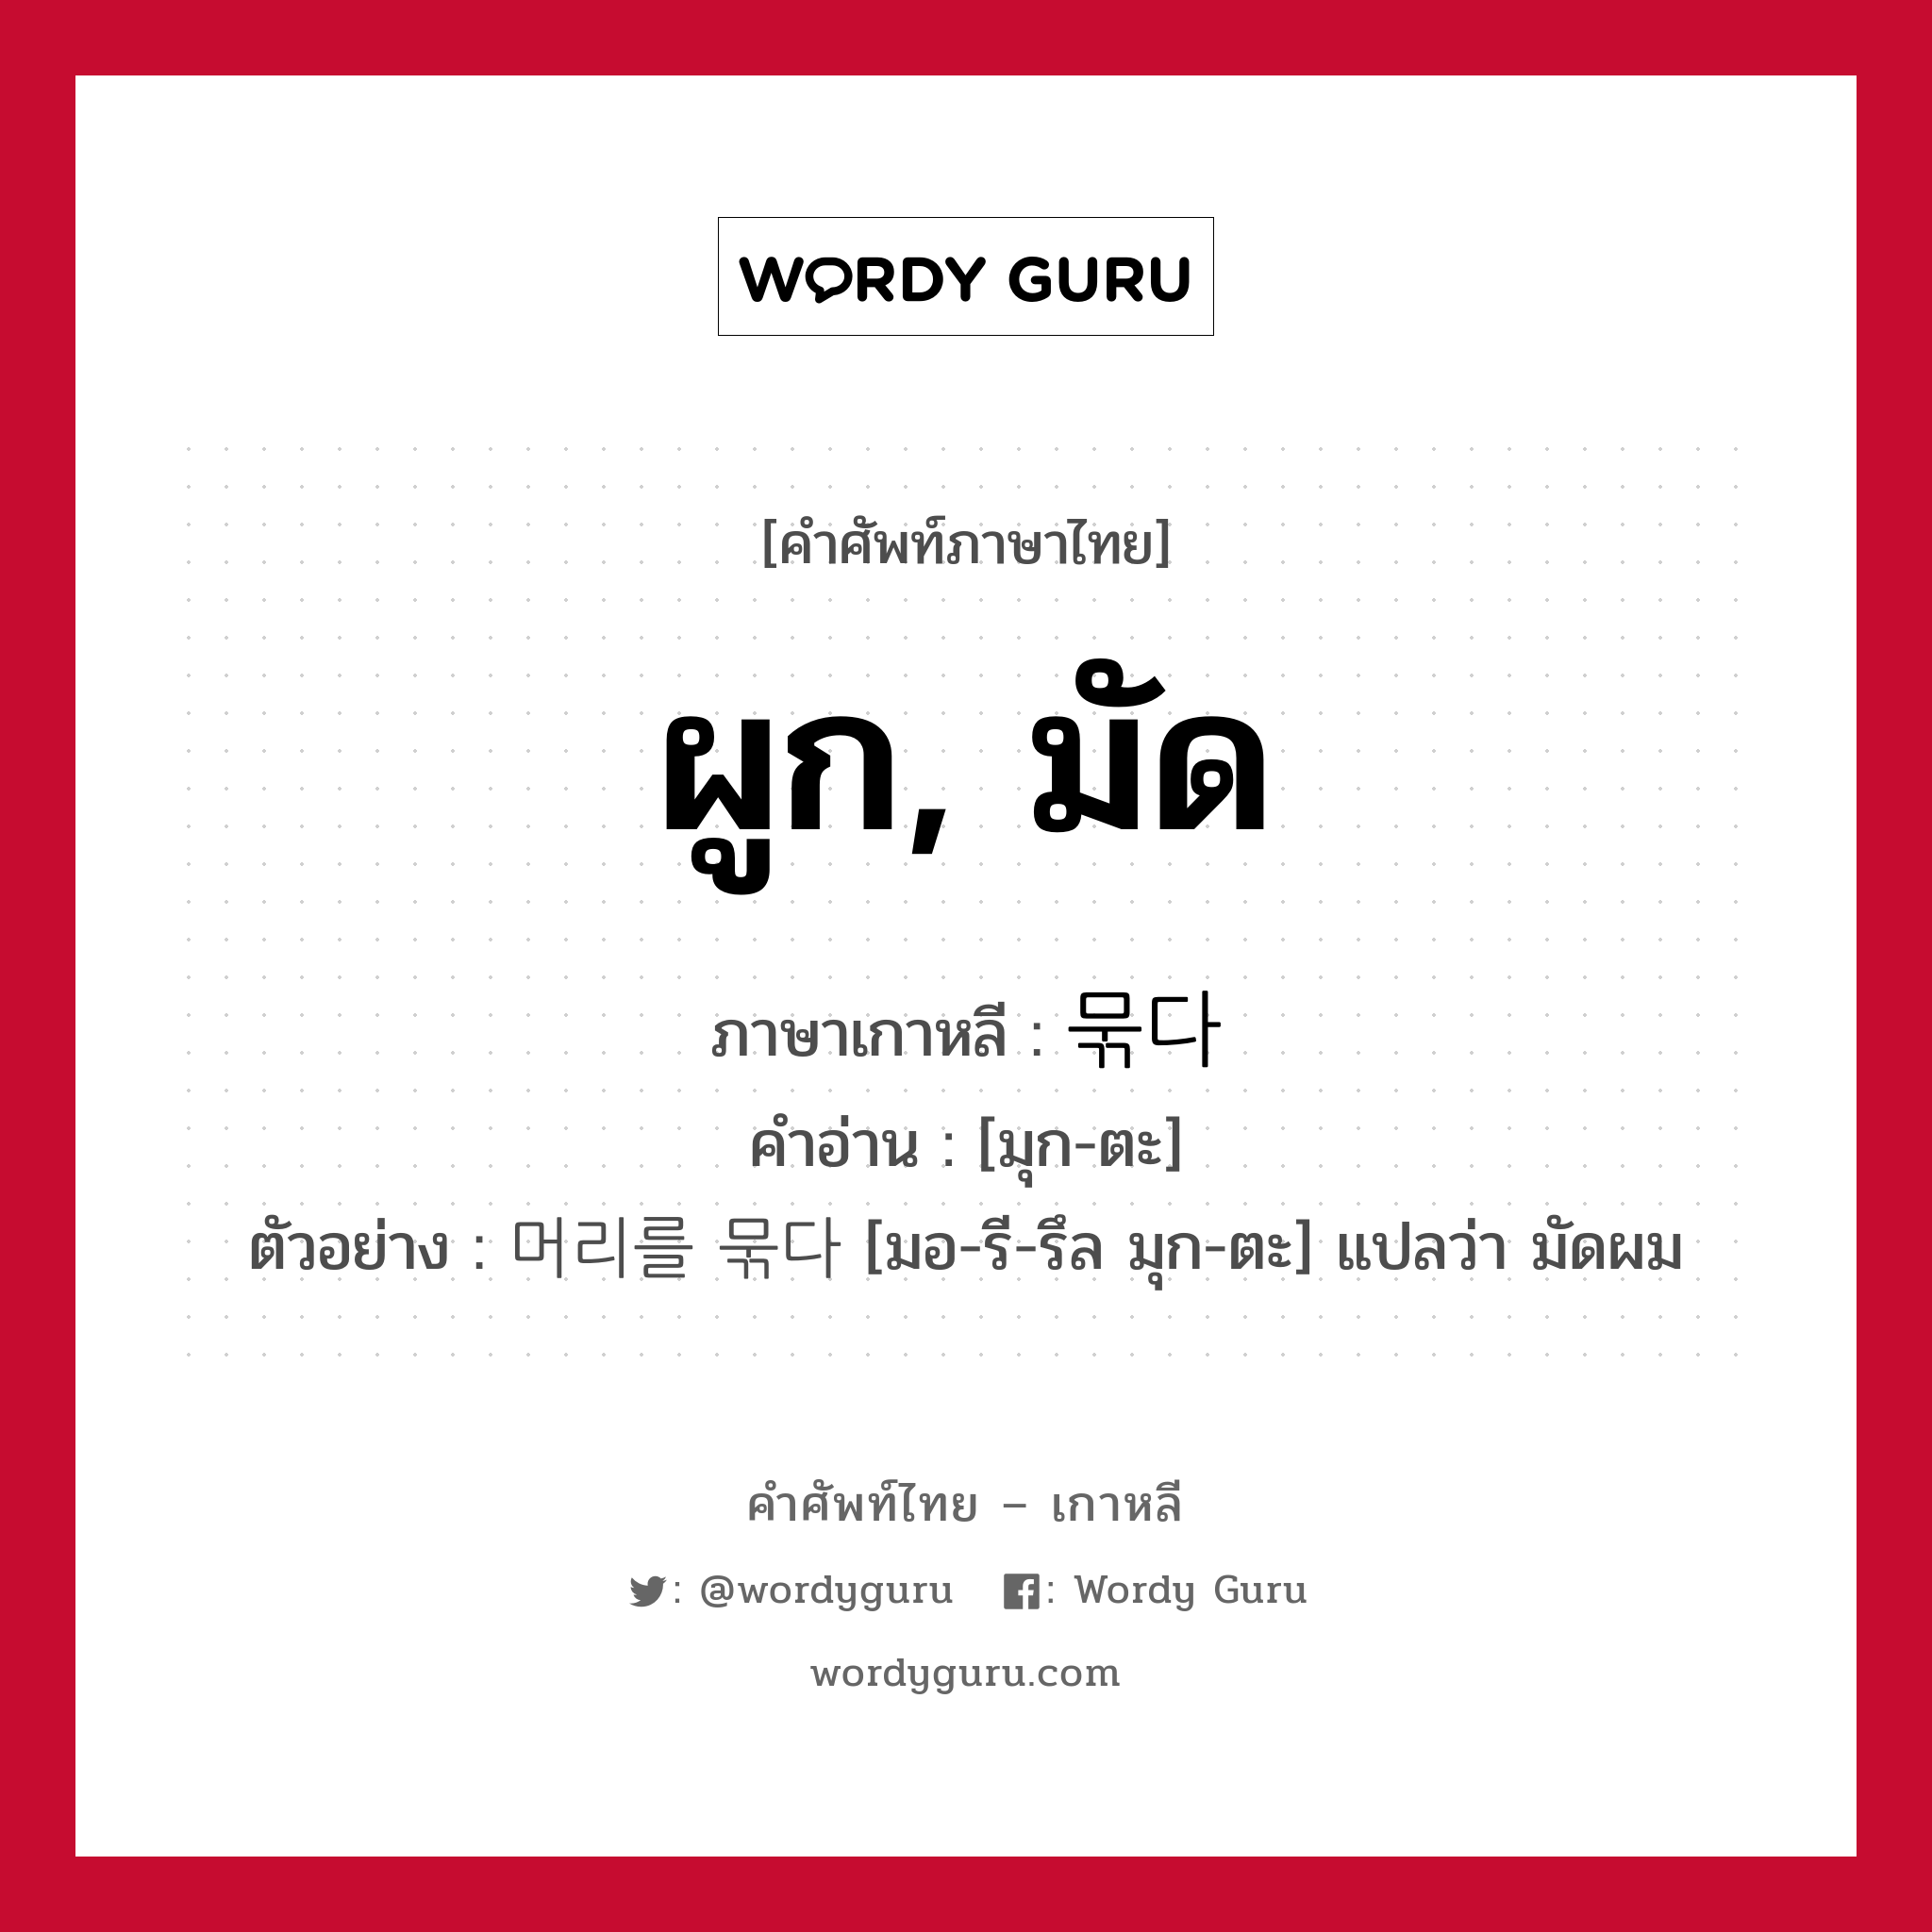 ผูก, มัด ภาษาเกาหลีคืออะไร, คำศัพท์ภาษาไทย - เกาหลี ผูก, มัด ภาษาเกาหลี 묶다 คำอ่าน [มุก-ตะ] ตัวอย่าง 머리를 묶다 [มอ-รี-รึล มุก-ตะ] แปลว่า มัดผม